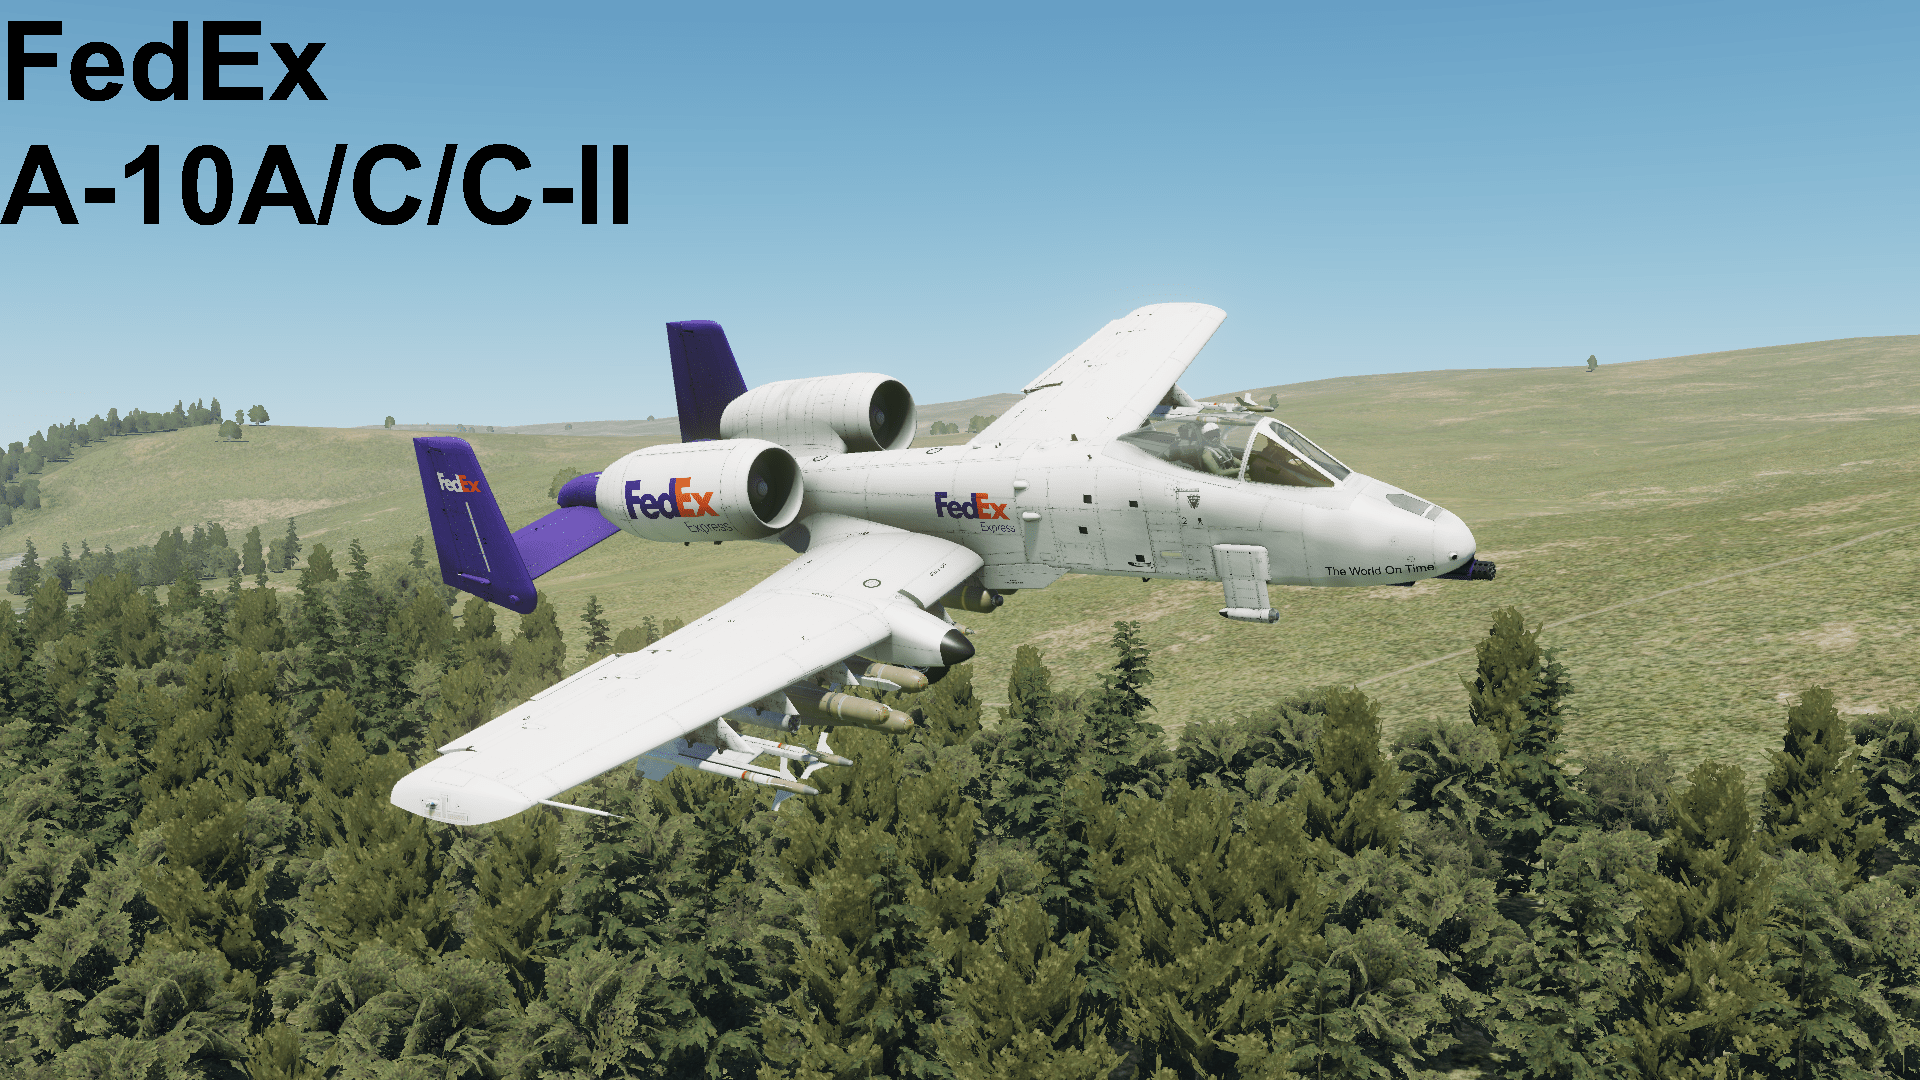 (V1.1) FedEx A-10A/C/C-II